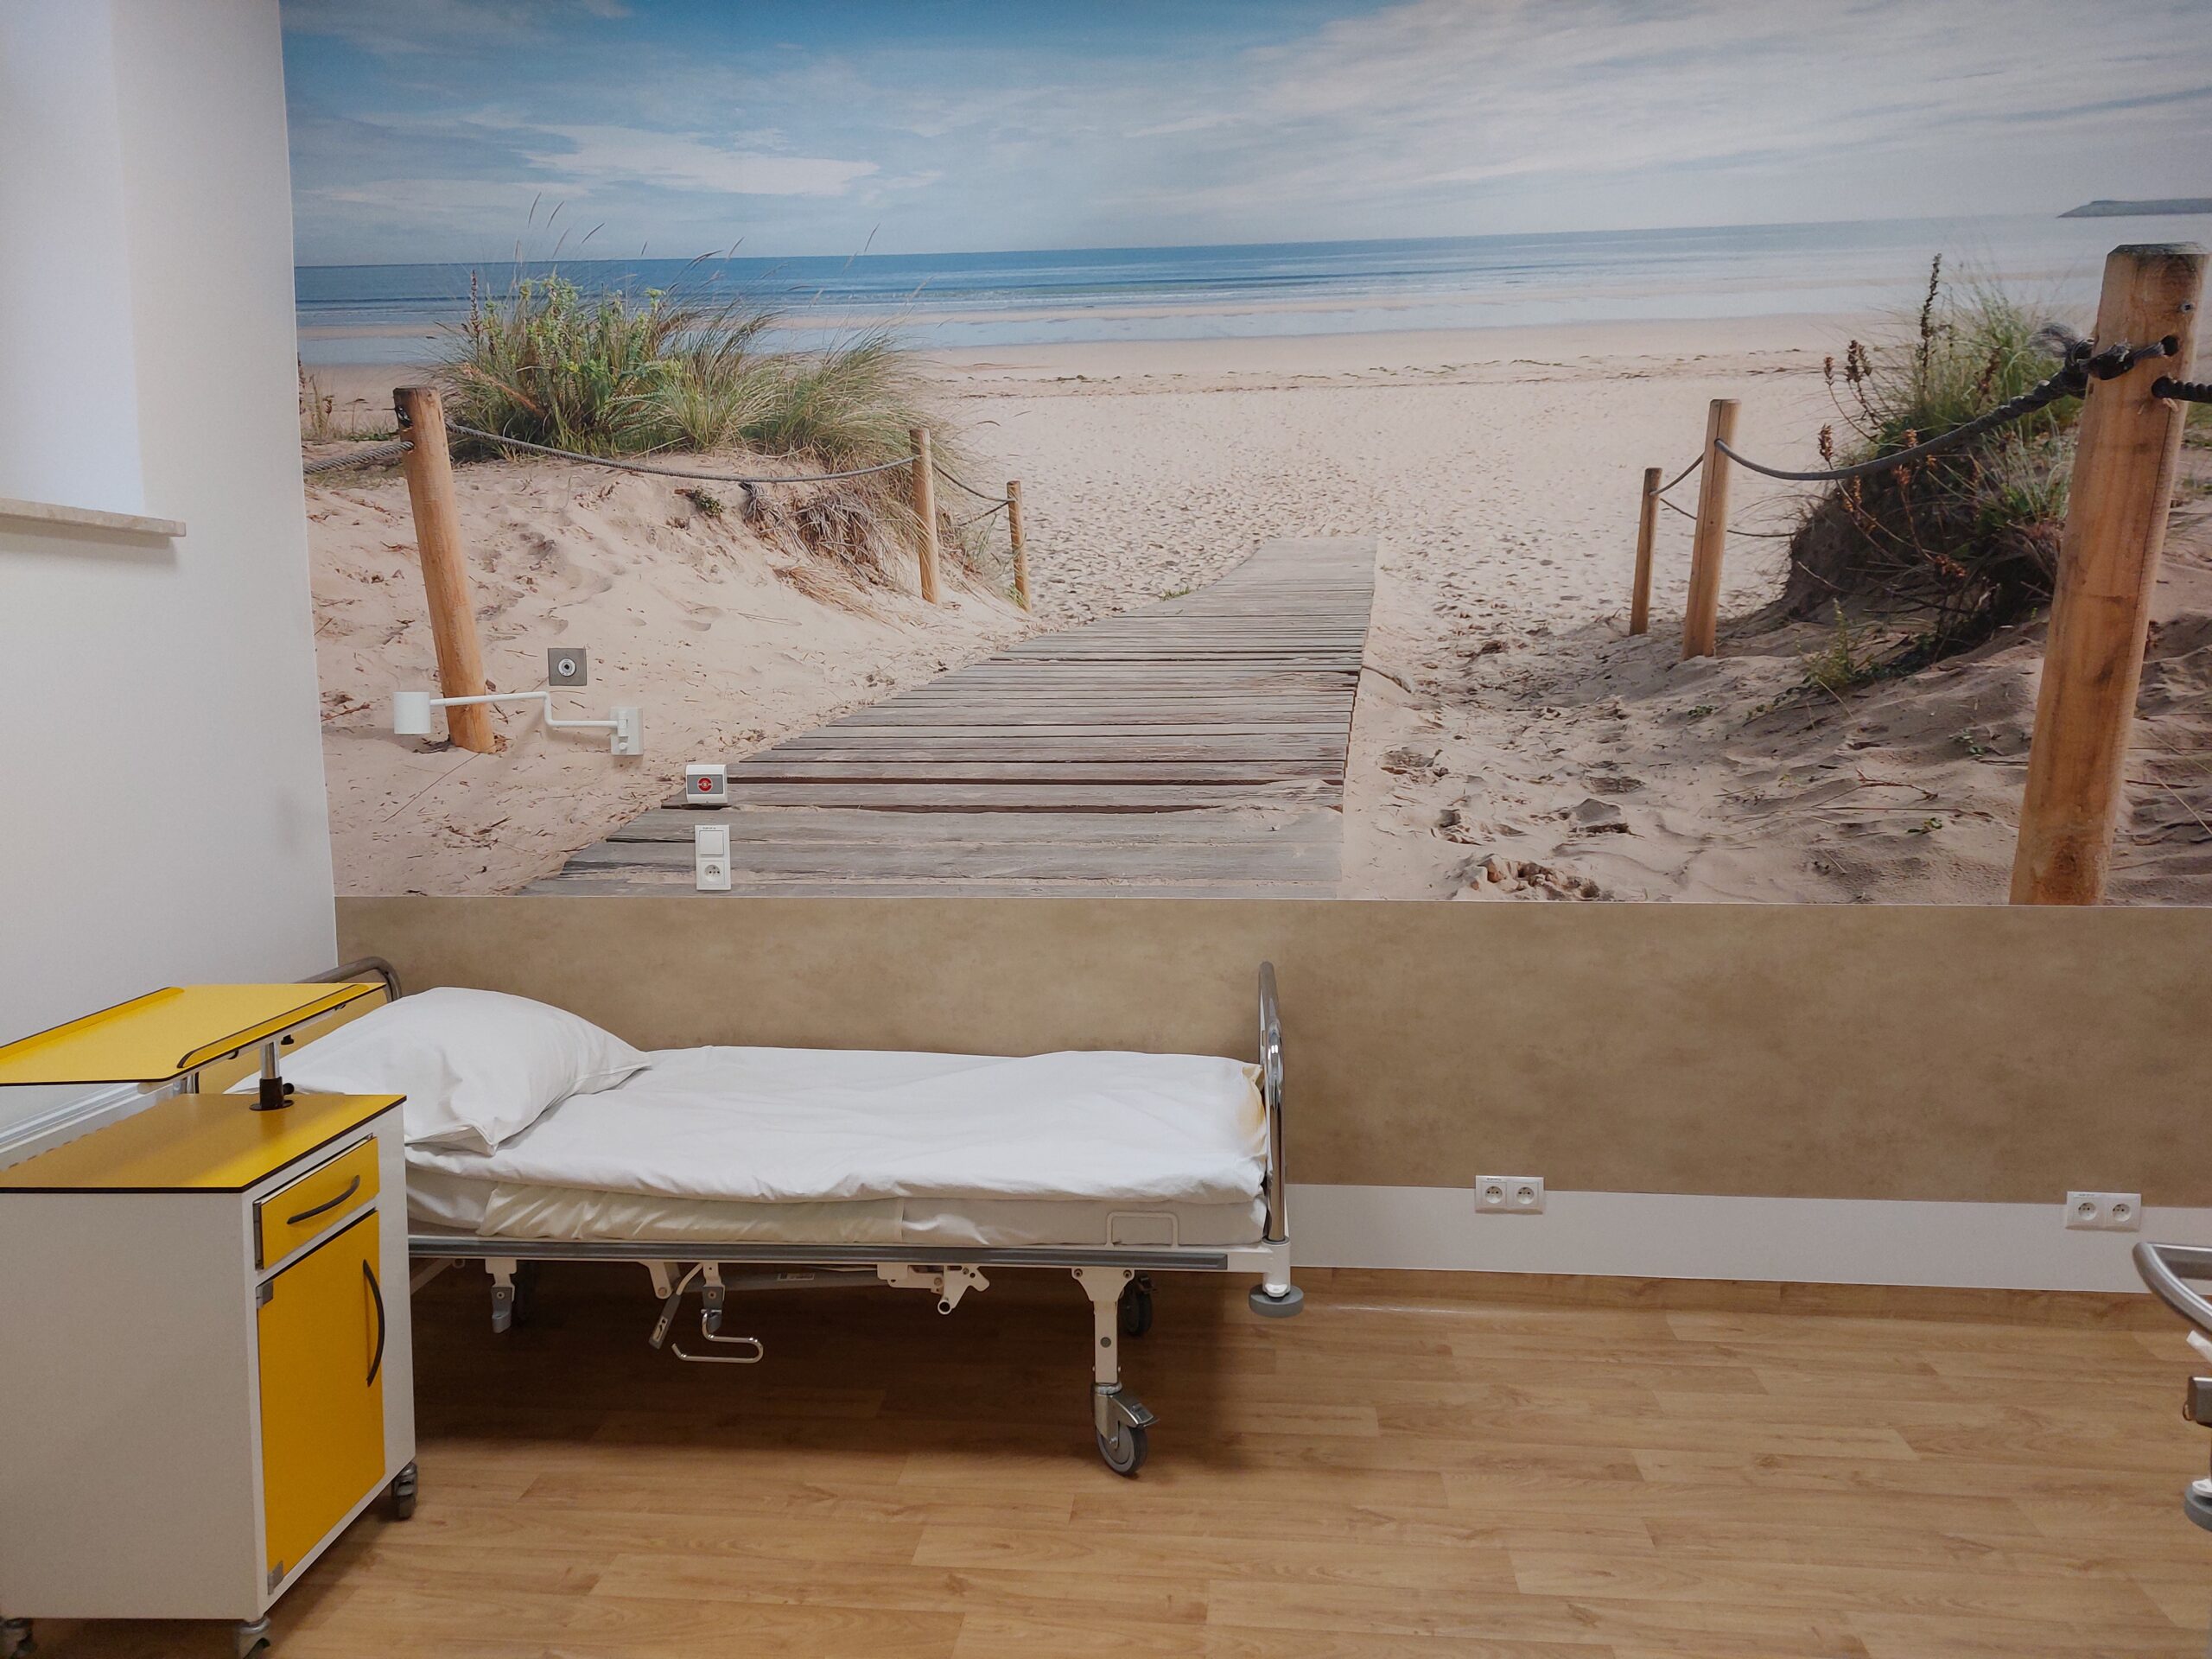 sala oddziału położniczego, łózko pobytowe, tapeta z plażą